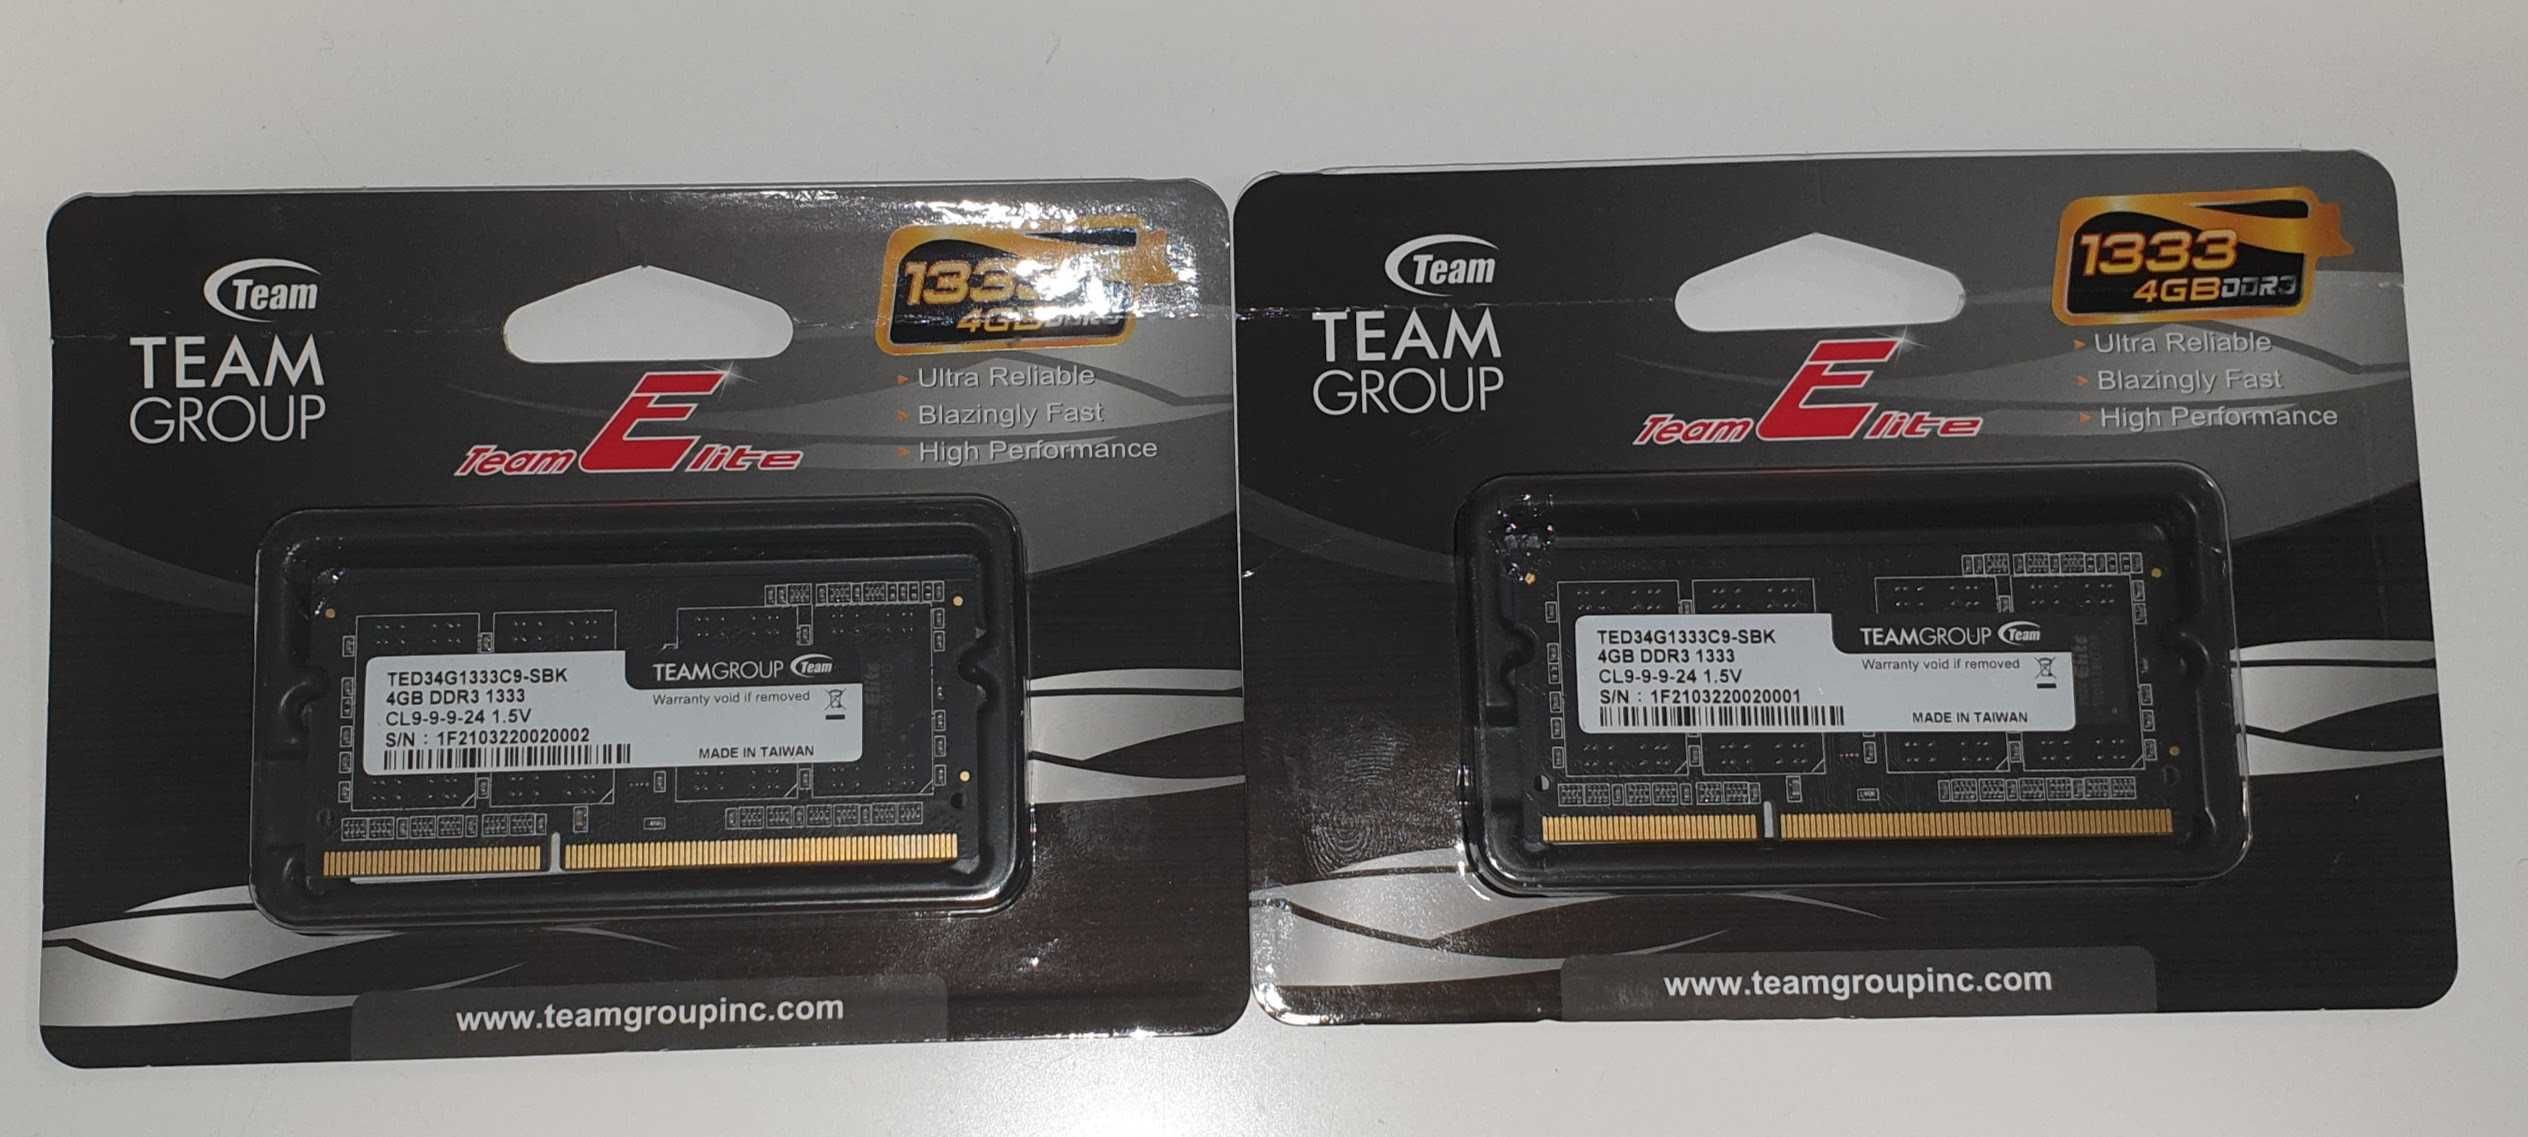 NOVO - 2 x Memória Dimm Team Group 4GB DDR3 1333MHz CL9 1.5V 204pin